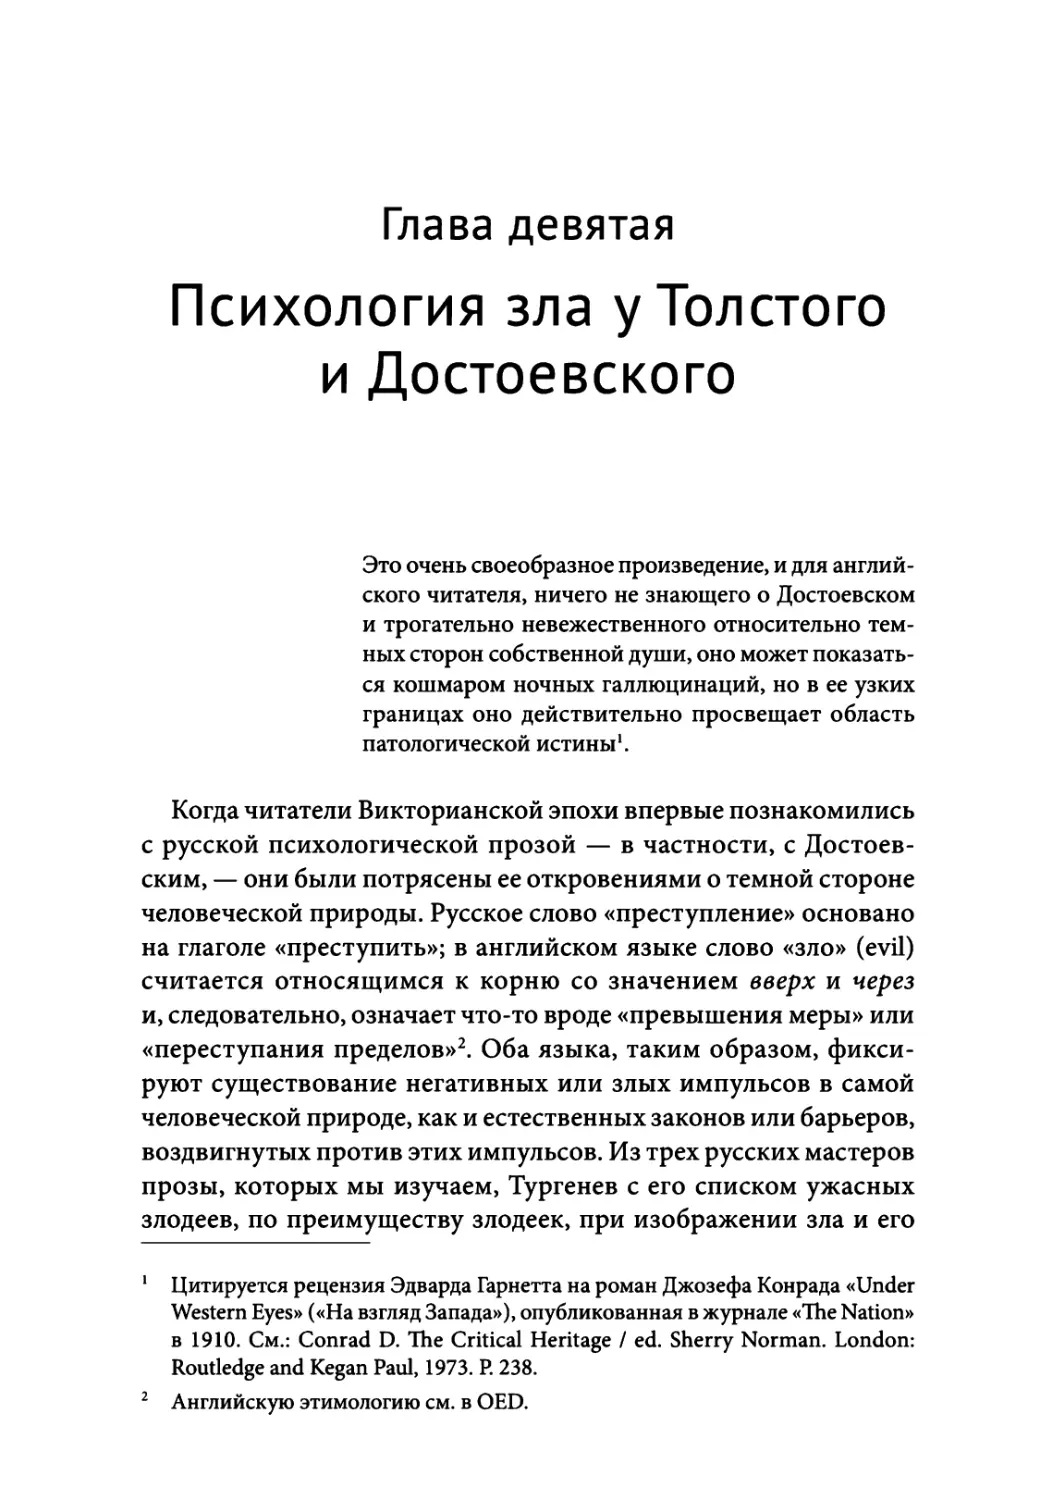 Глава 9. Психология зла у Толстого и Достоевского